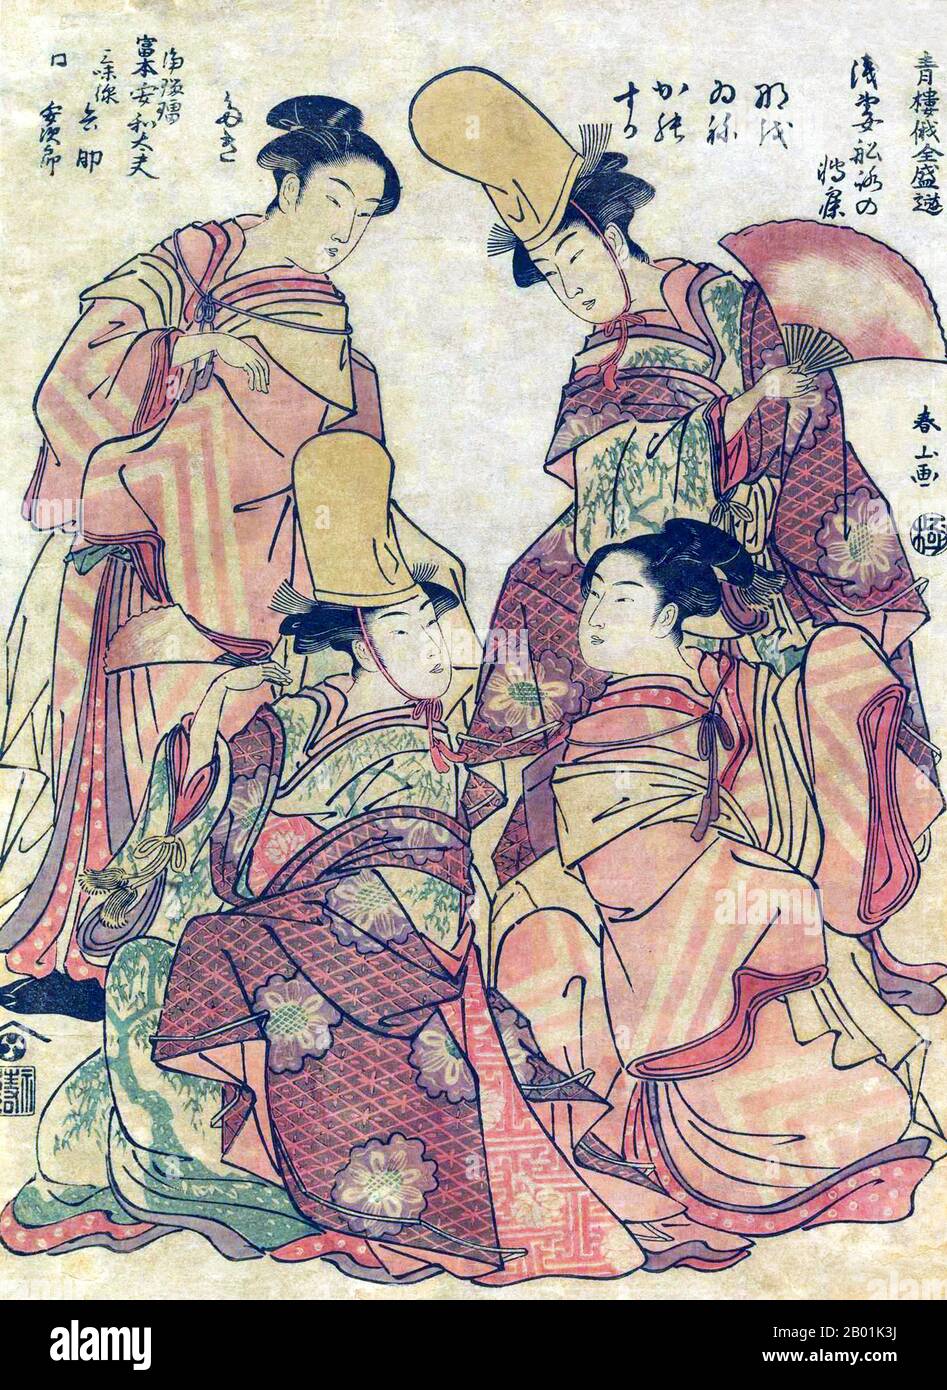 Japon : filles en robe de danse. Gravure sur bois Ukiyo-e de la série 'divertissement populaire au Festival de Niwaka' ('Seiro Niwaka Zensei Asobi') de Katsukawa Shunsho (1726 - 19 janvier 1792), c. 1790. Katsukawa Shunshō est un peintre et graveur japonais de style ukiyo-e, et l'artiste principal de l'école Katsukawa. Shunshō étudie auprès de Miyagawa Shunsui, fils et élève de Miyagawa Chōshun, tous deux aussi célèbres et talentueux artistes ukiyo-e. Shunshō est surtout connu pour avoir introduit une nouvelle forme de yakusha-e, estampes représentant des acteurs kabuki. Banque D'Images